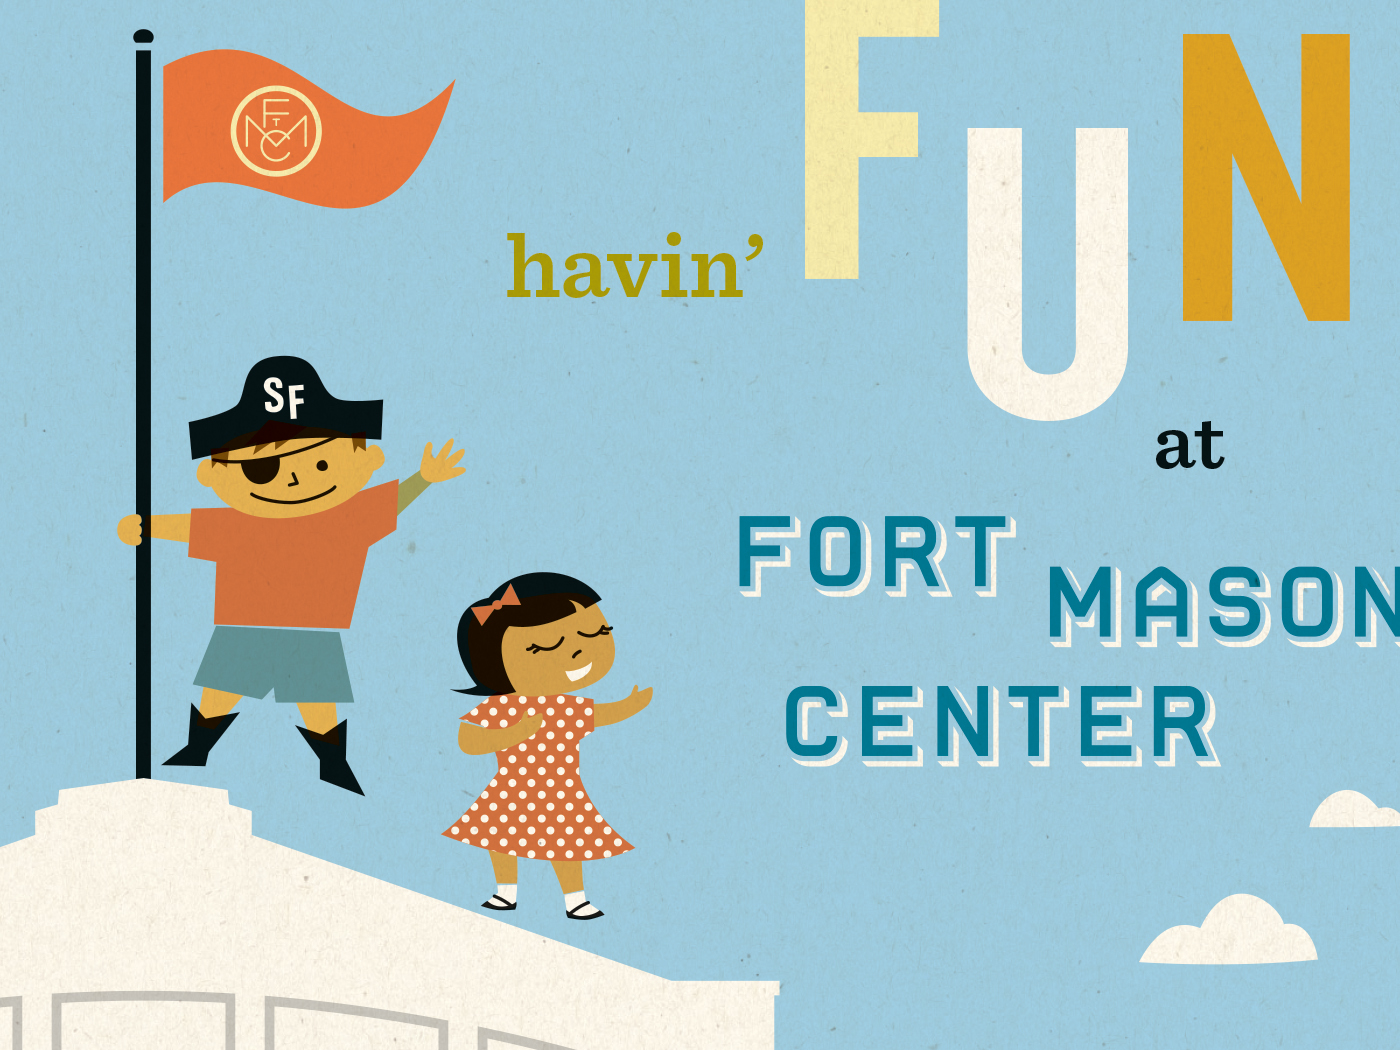 Fort Mason Center Havin' Fun brand boards